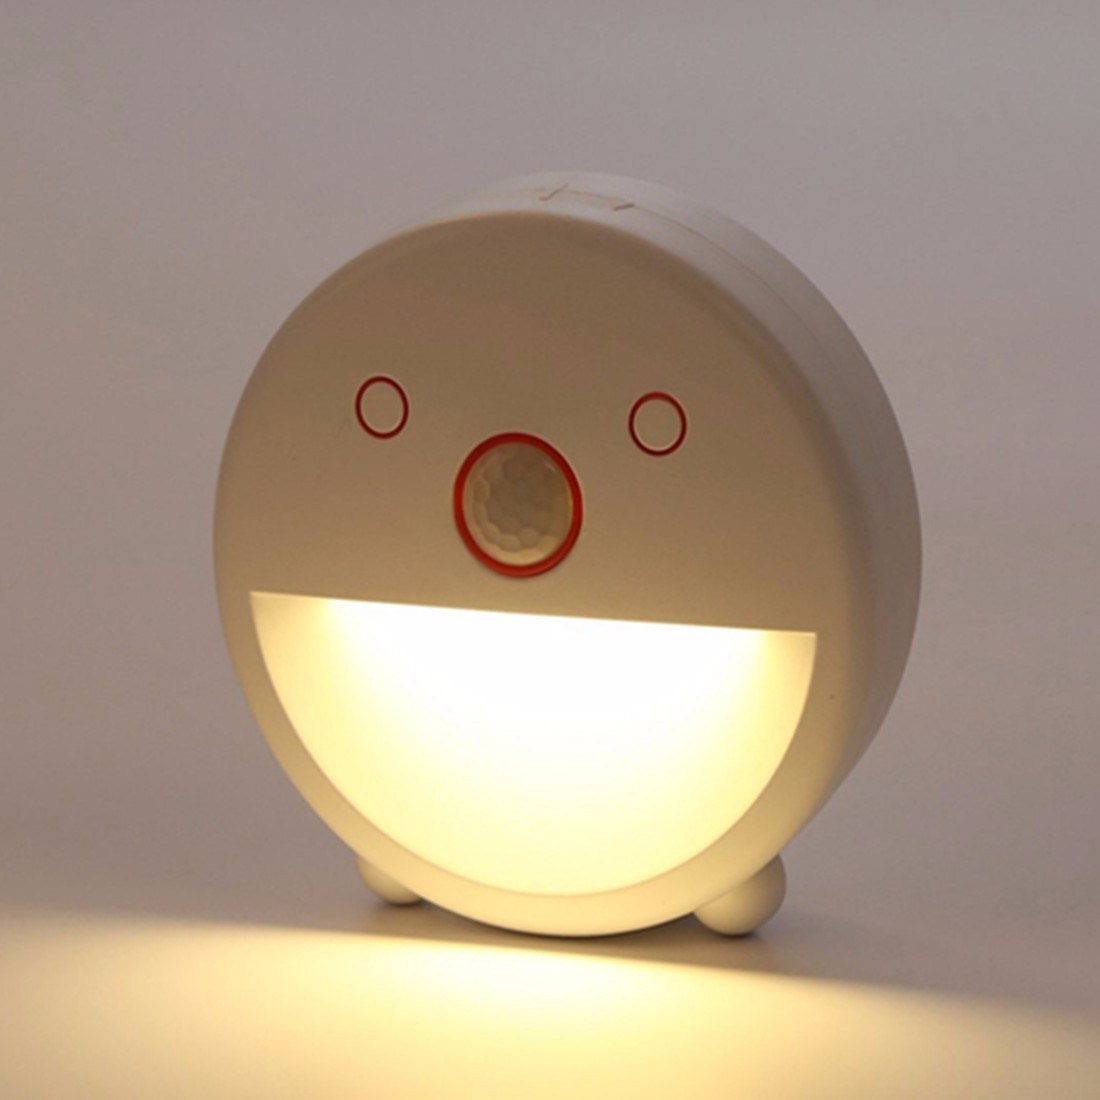 Smart Sensor Infrared LED Night Light in Kitchen or Corridor